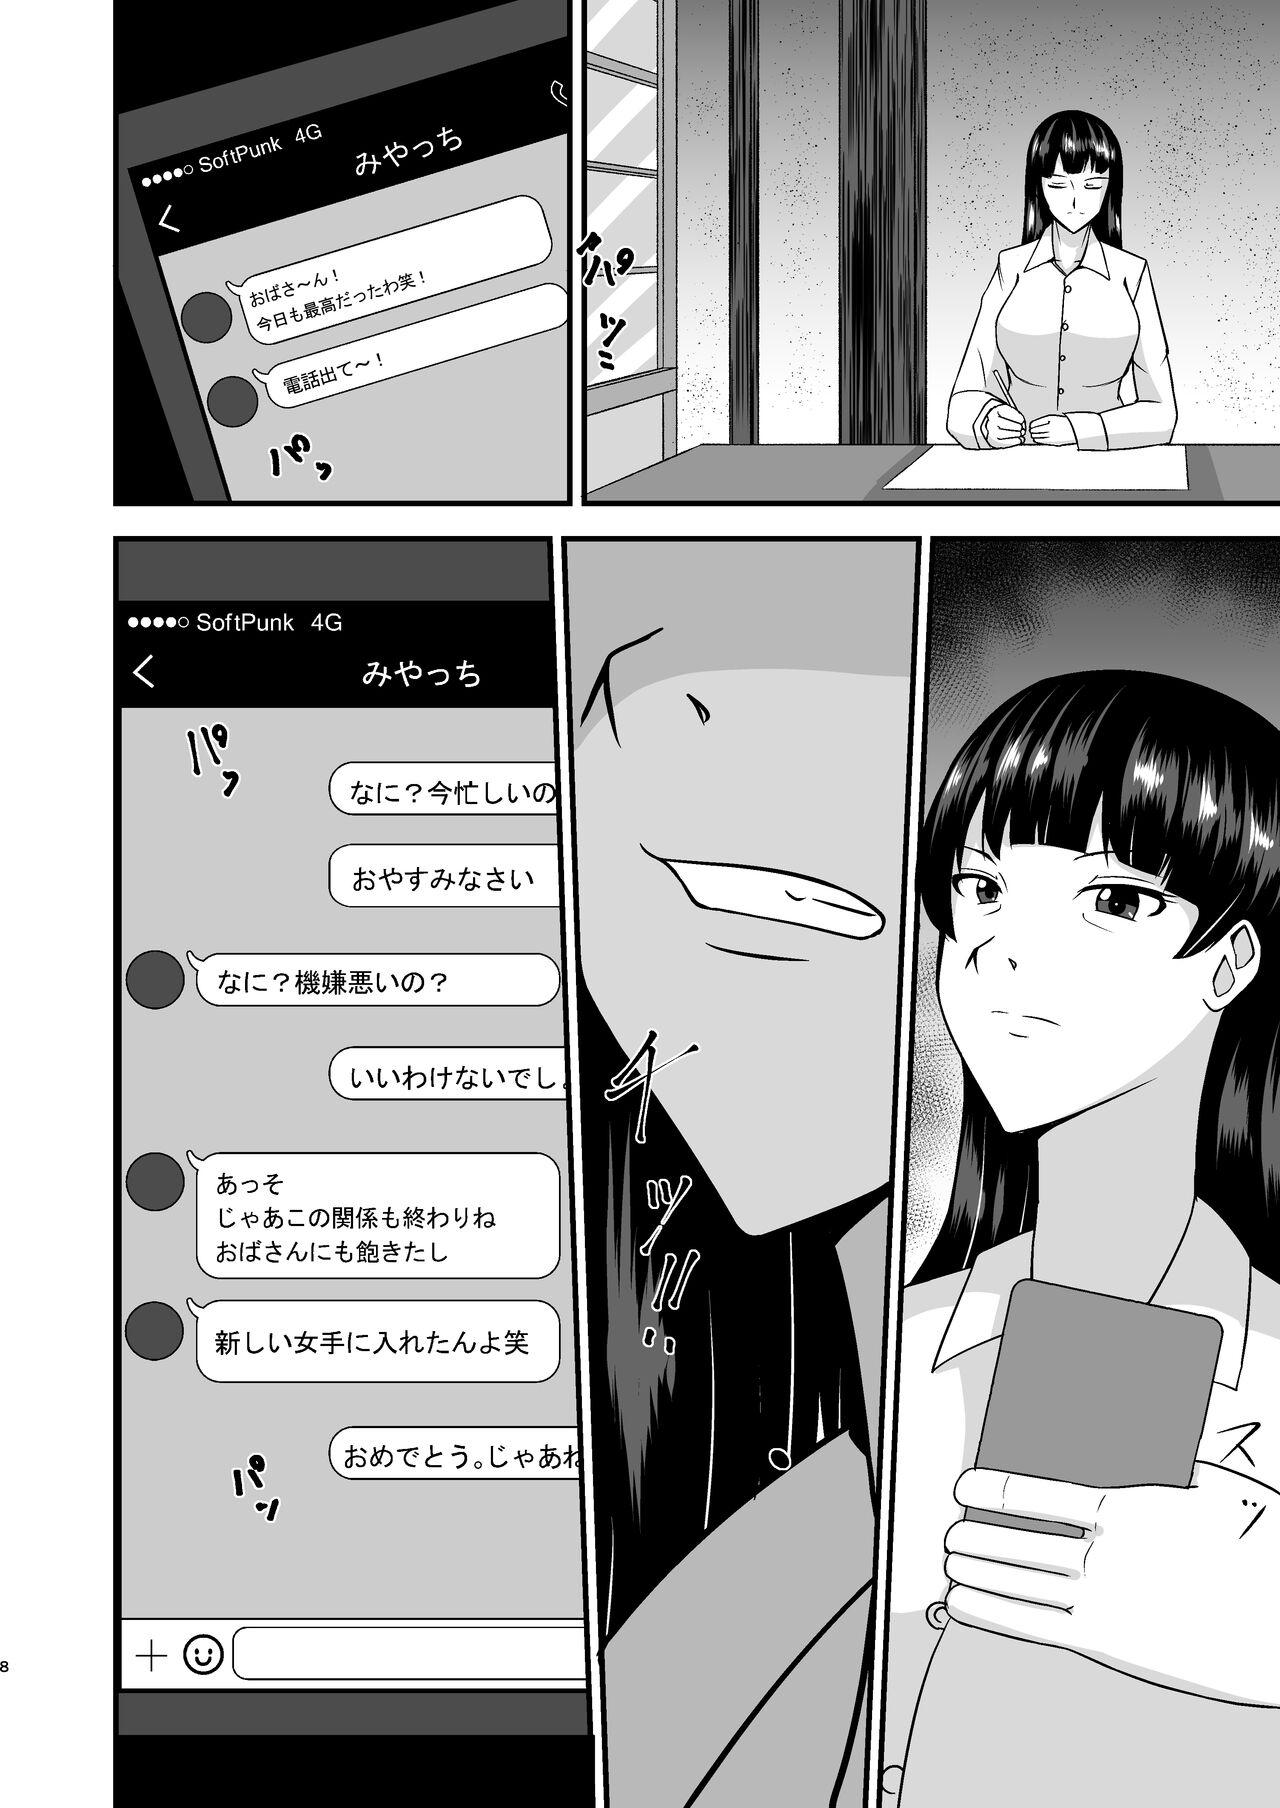 Strapon Ochiteiku Iemoto - Girls und panzer Weird - Page 8